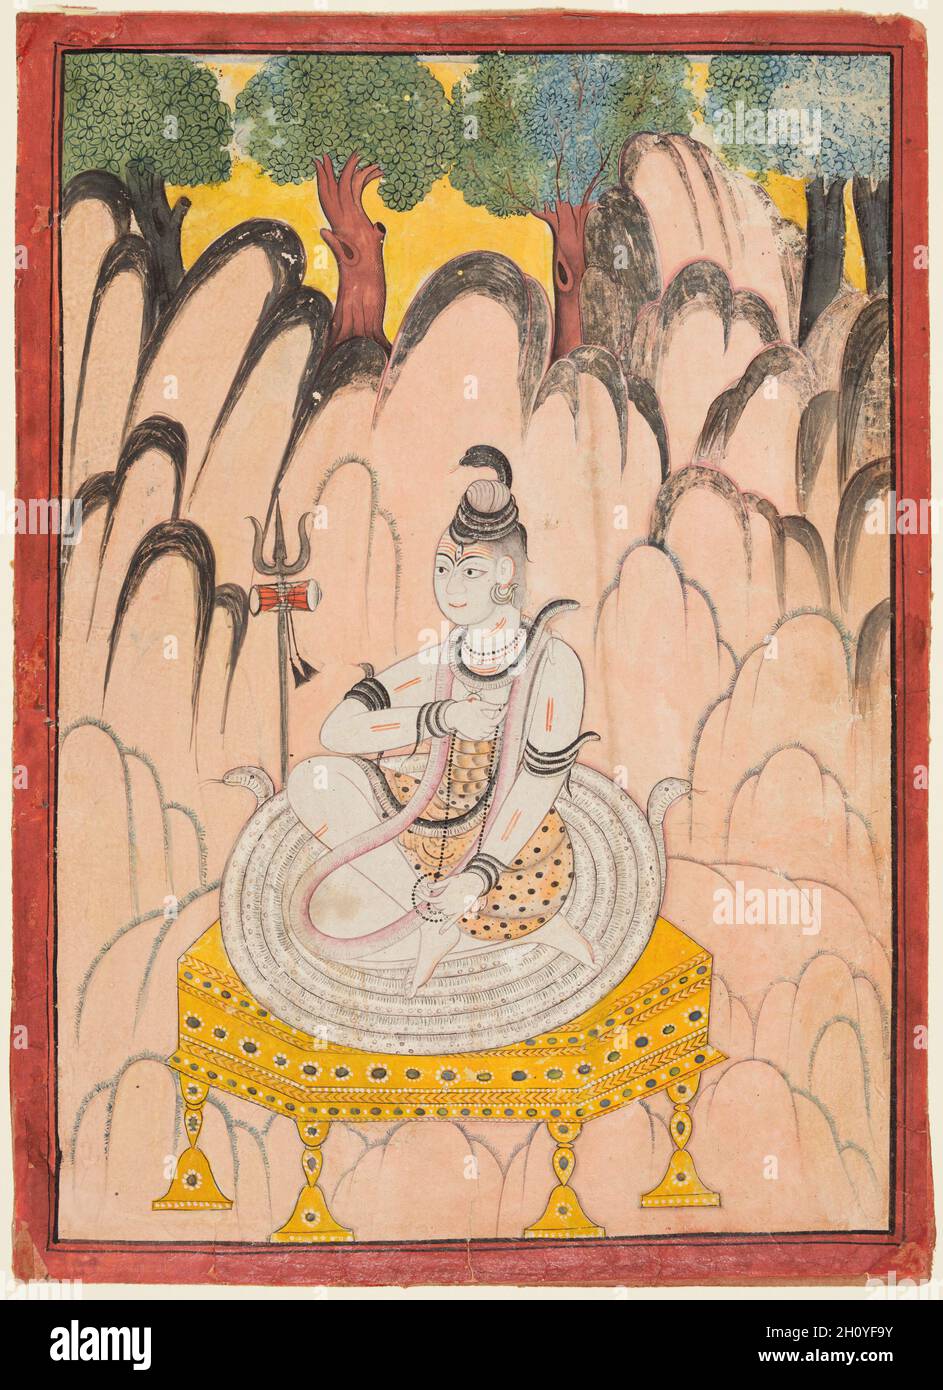 Shiva auf einem Thron in einer Landschaft, c. 1760. Nordindien, Himachal Pradesh, Pahari Königreich Chamba. Gummitemperatur auf Papier; Seite: 30.2 x 21.9 cm (11 7/8 x 8 5/8 Zoll); Bild: 28.3 x 19.8 cm (11 1/8 x 7 13/16 Zoll). Shiva wird auf Schlangen sitzend dargestellt, die auf einem königlichen Sitz zusammengerollt sind. Die Szene ist in einer felsigen bergigen Umgebung mit einer Reihe von Bäumen im Hintergrund. In den Gemälden von Chamba wird Shiva in der Regel mit einem weißen Teint in der Dreiviertelansicht dargestellt. Diese Formel ist seit über einem Jahrhundert mit wenigen Ausnahmen konsistent. Stockfoto